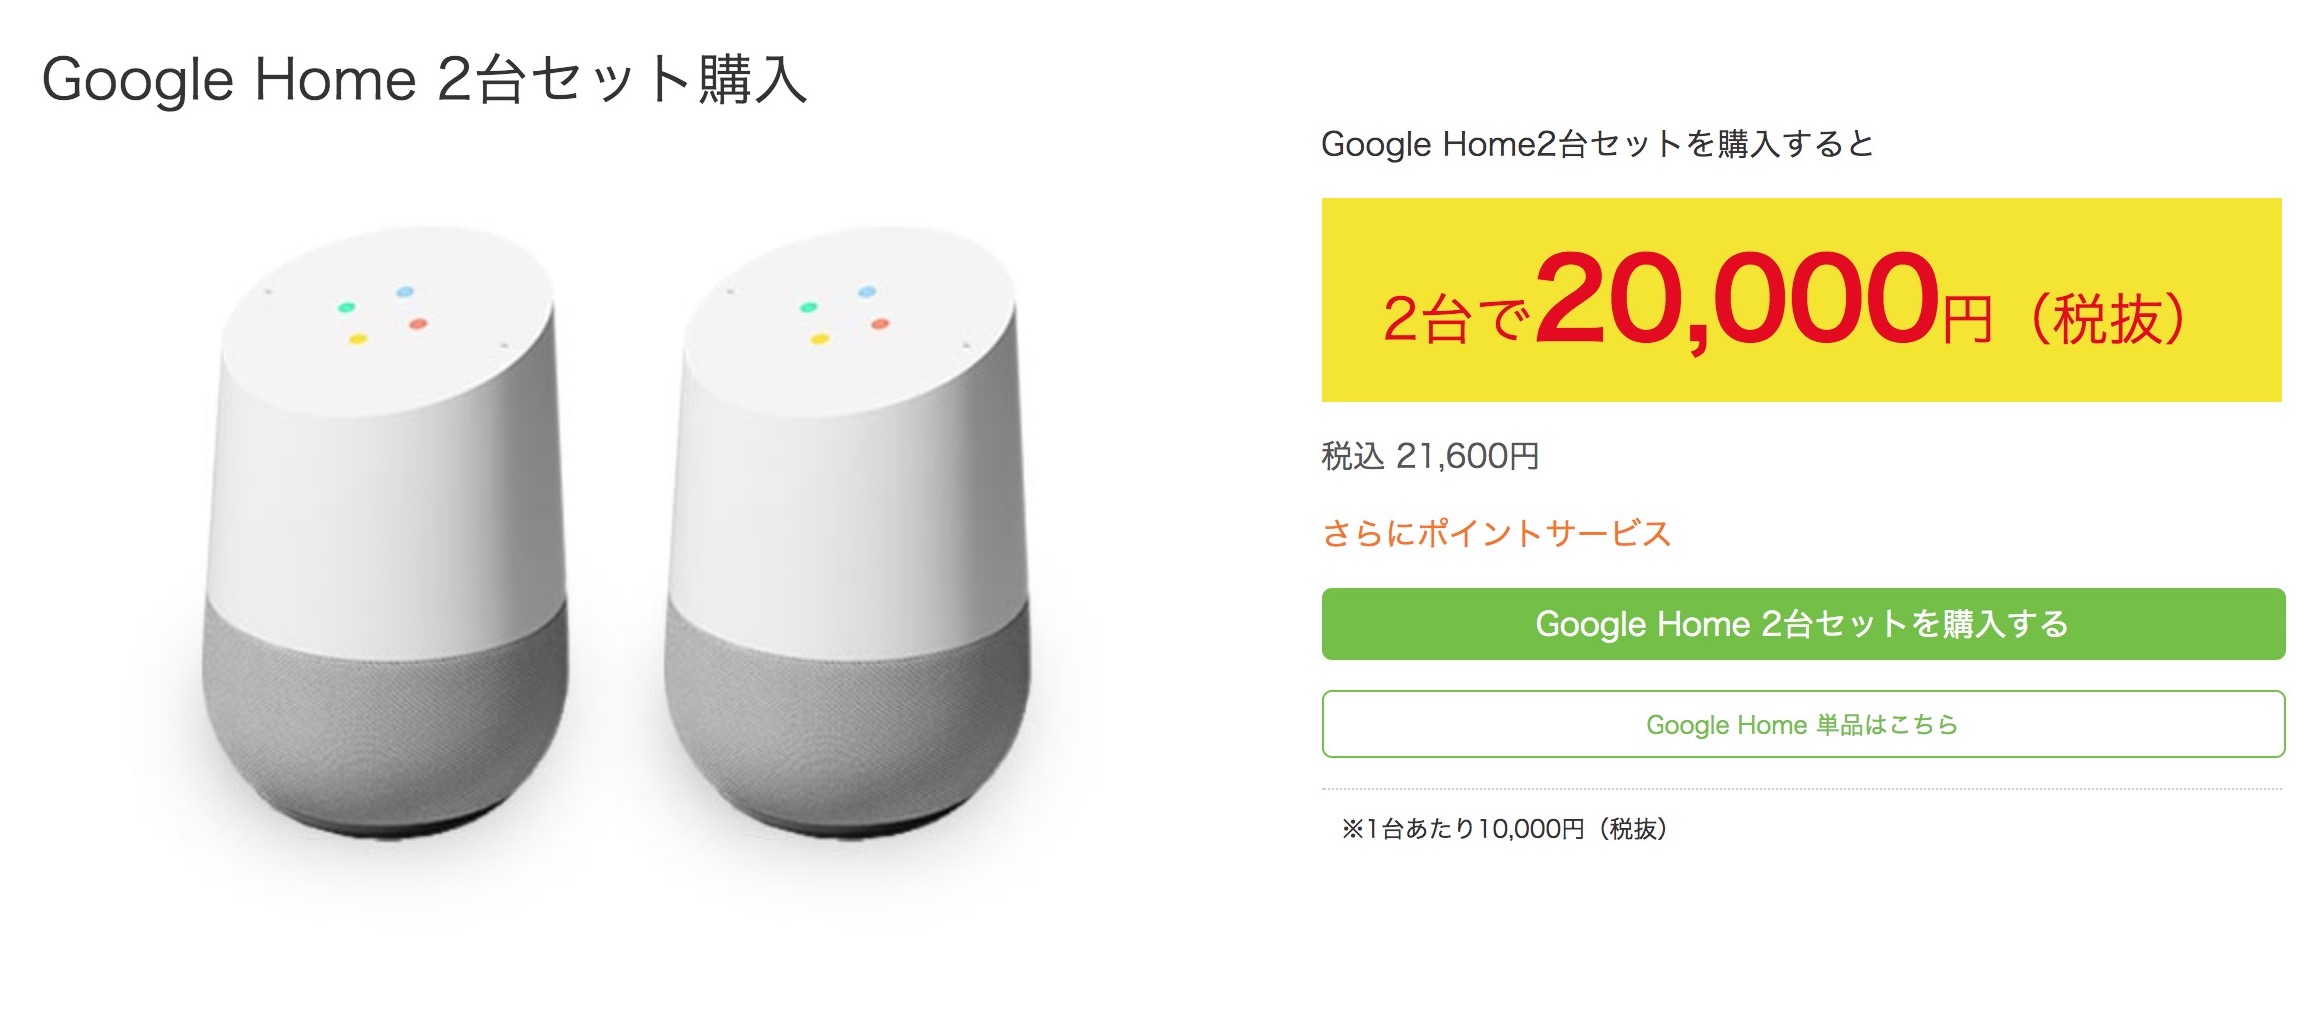 Google Home」が発売。ビックカメラでChromecastが無料、2台セットで8000円オフも